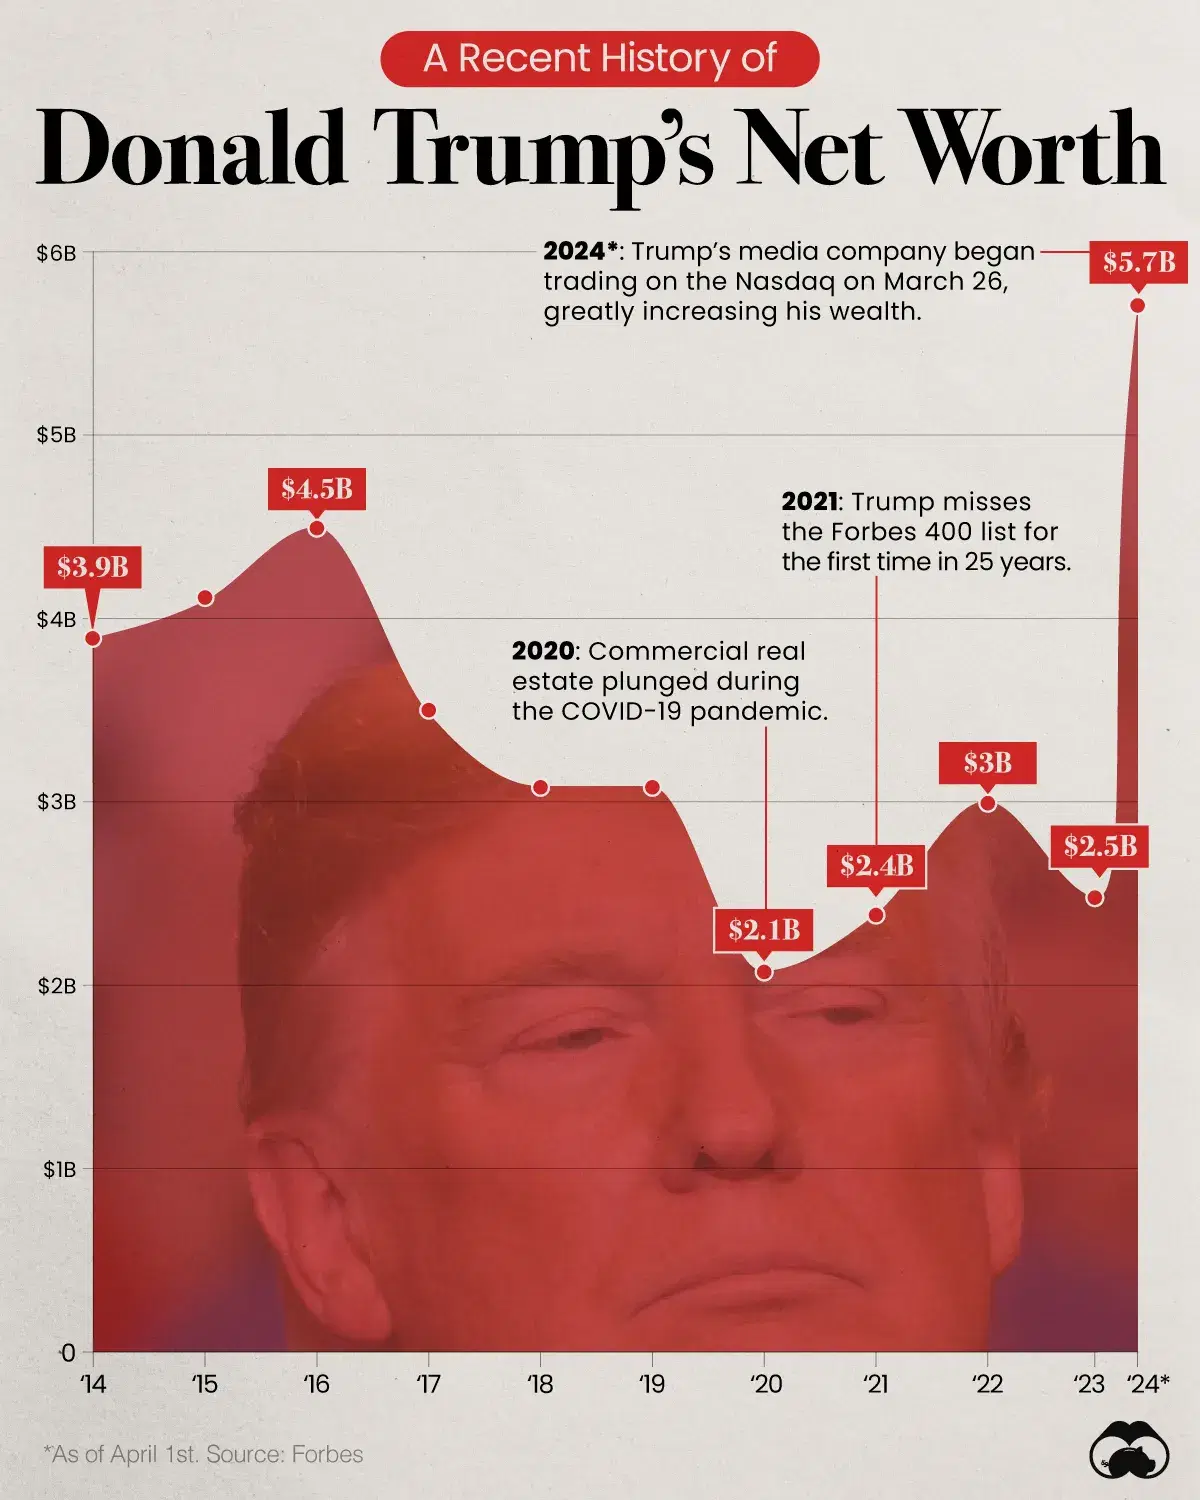 Trump’s Net Worth Jumps After Nasdaq Listing